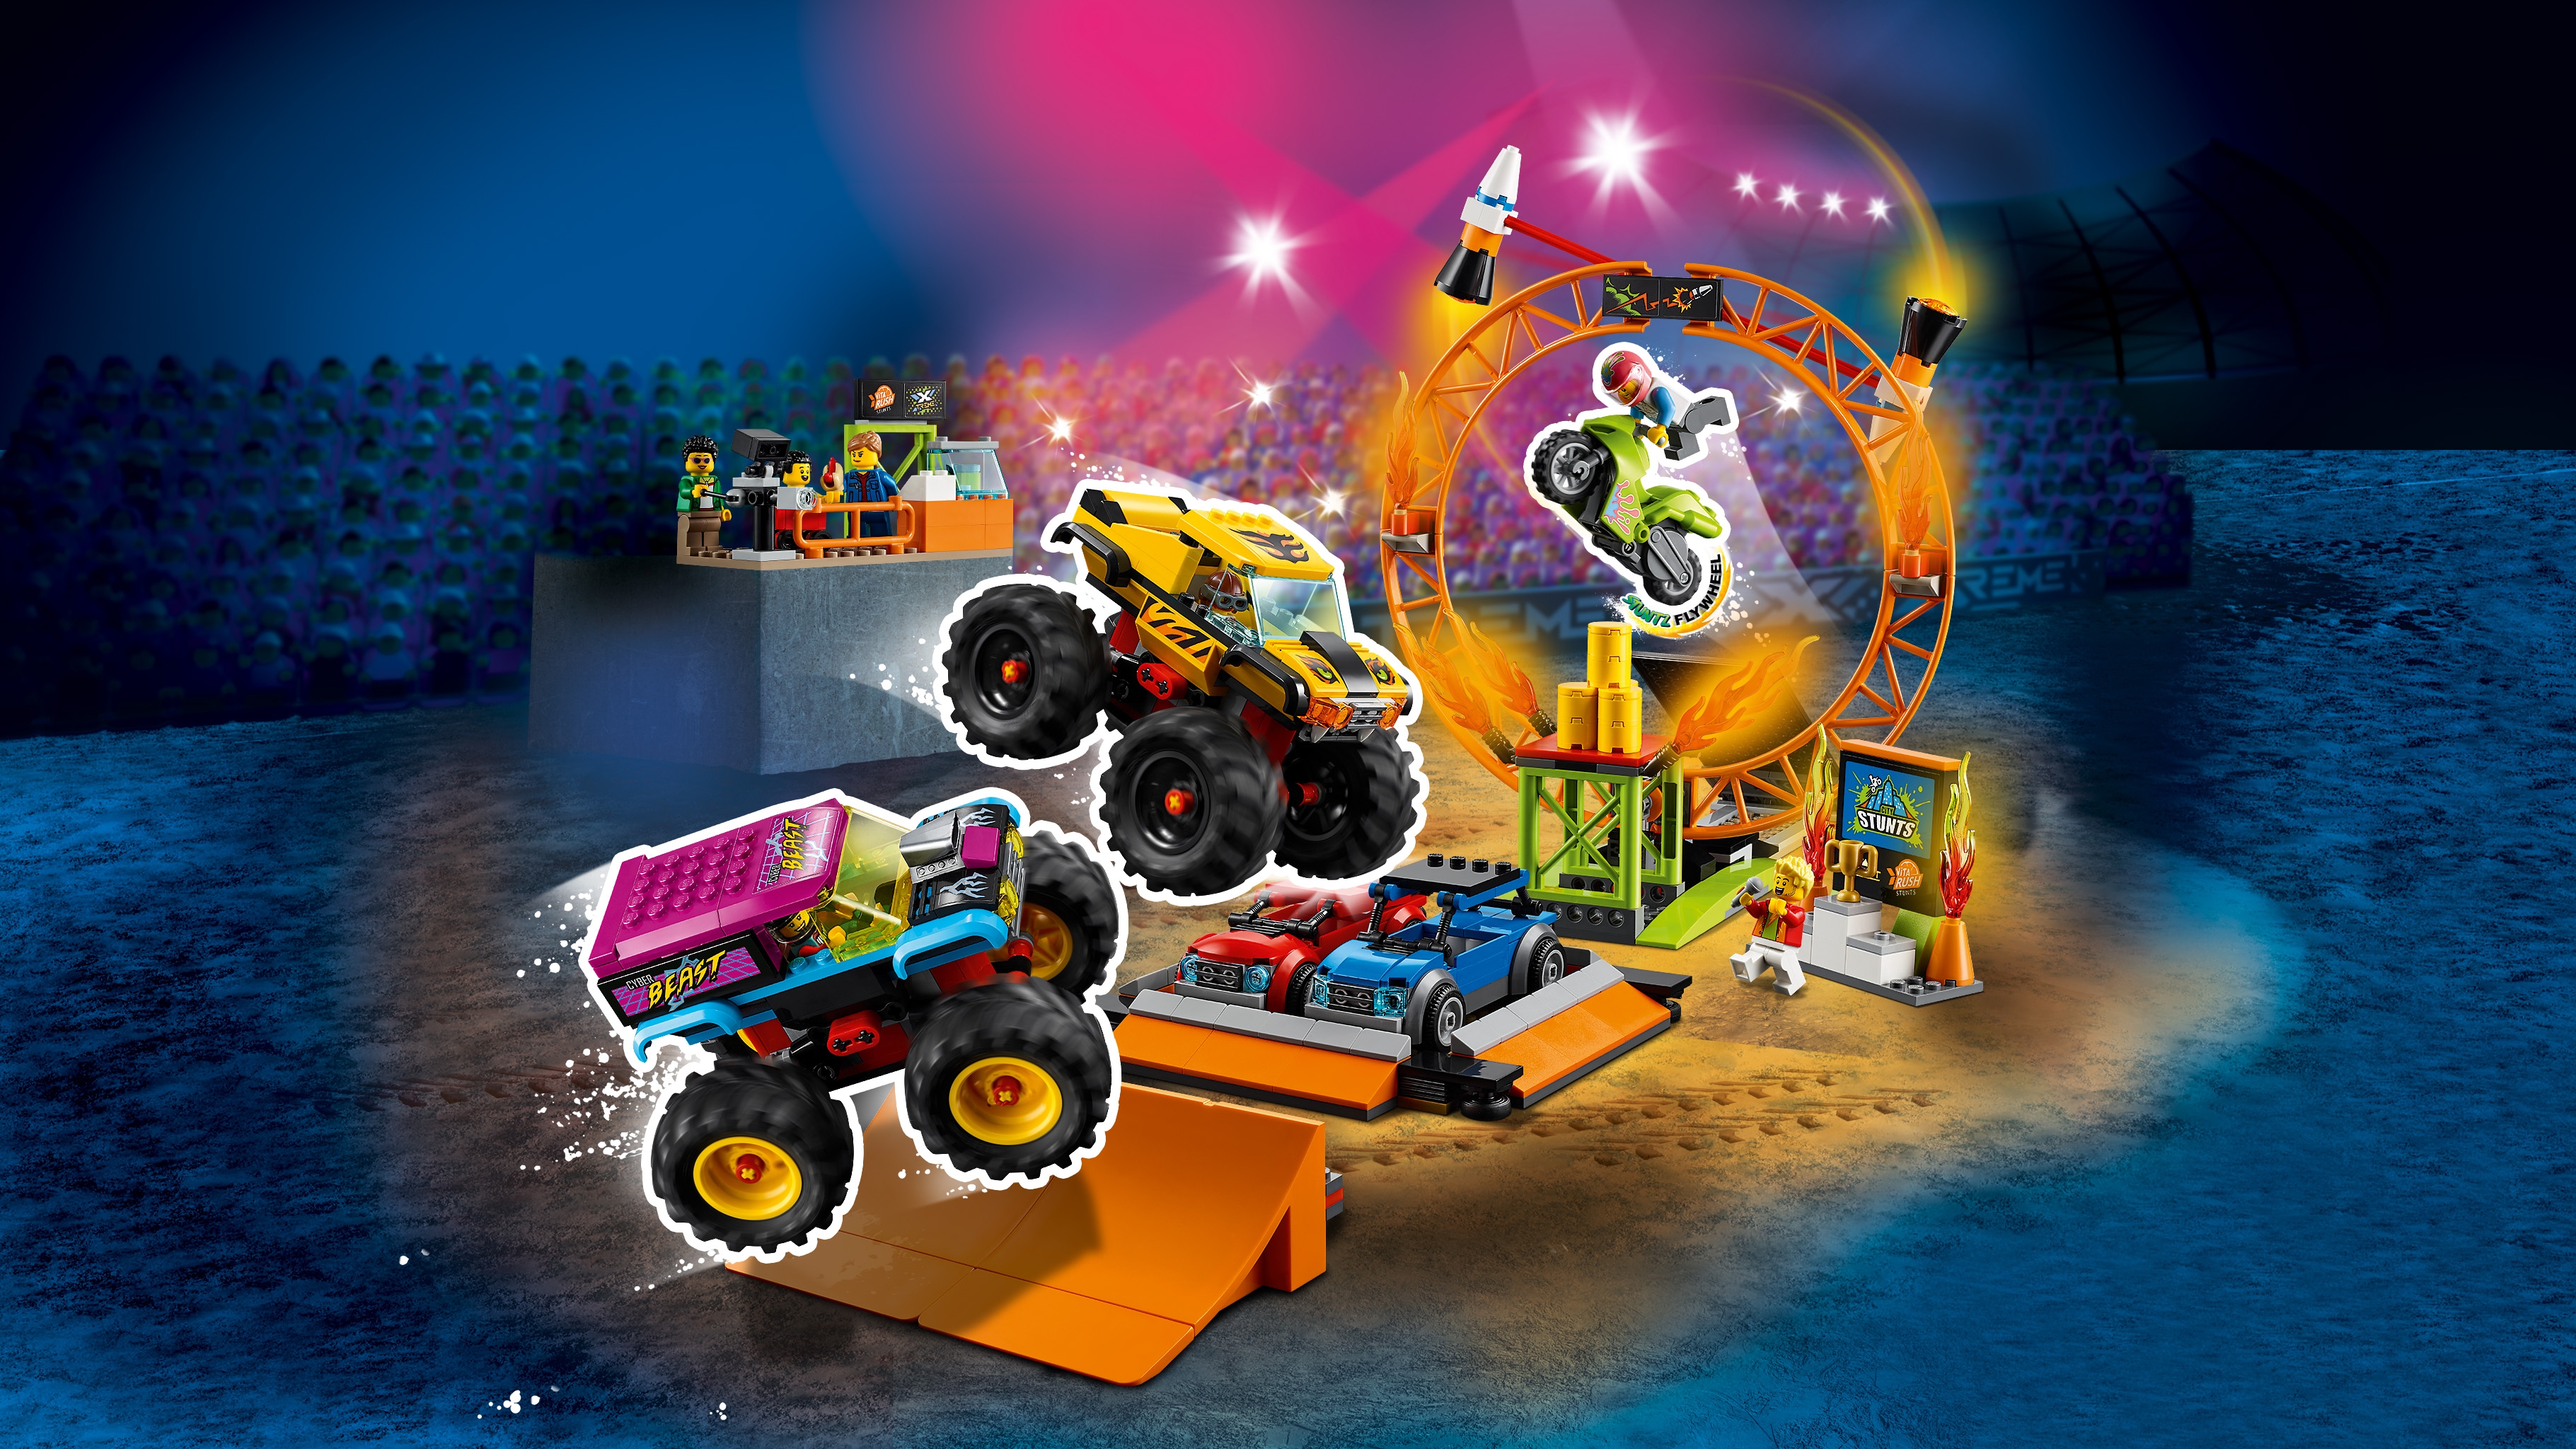 Stunt Show Arena 60295 - LEGO® City Sets - LEGO.com for kids